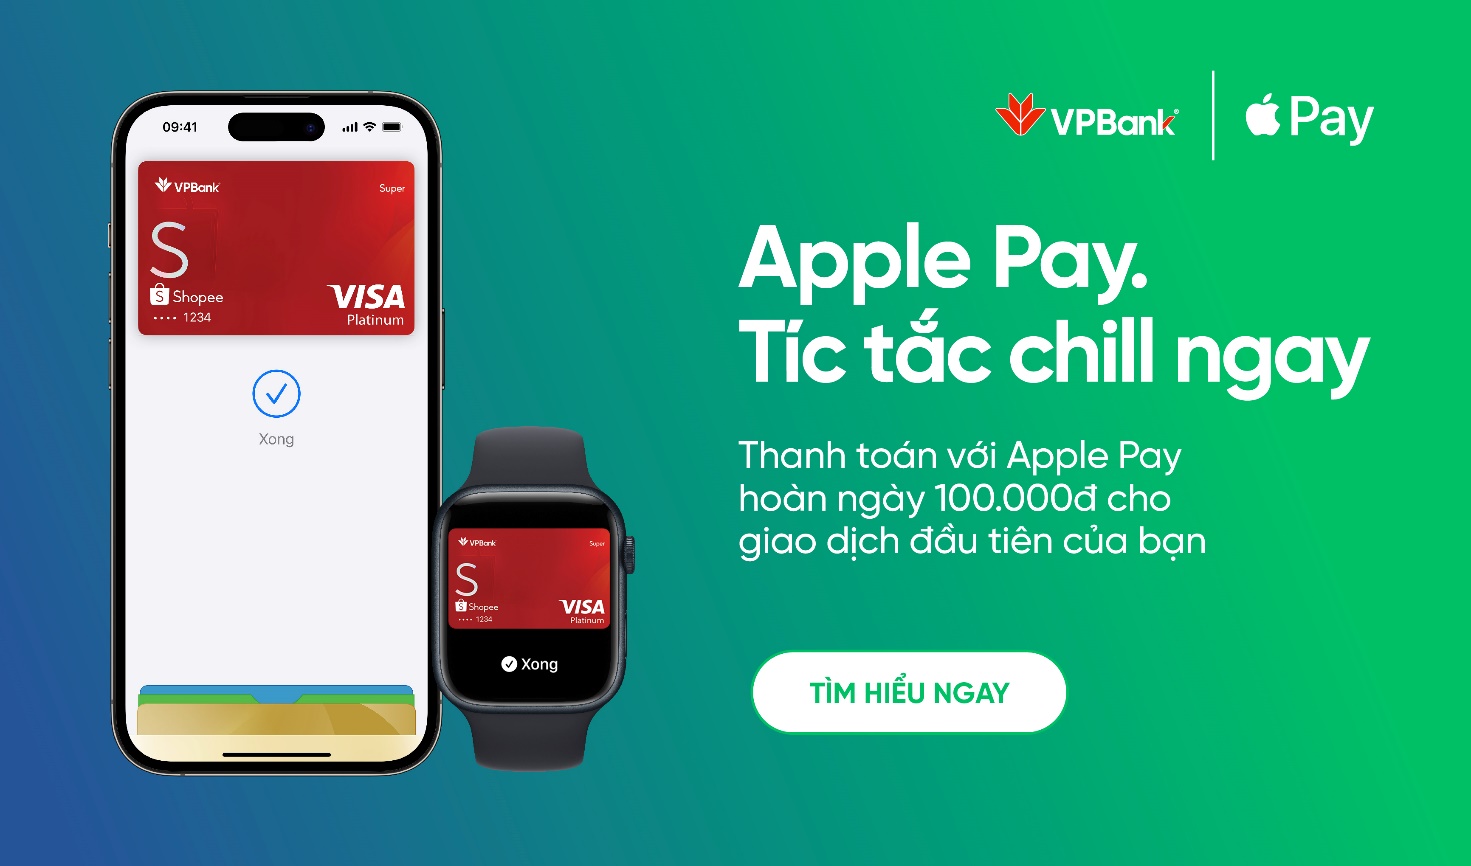 VPBank hỗ trợ tích hợp cả thẻ Mastercard & Visa trên Apple Pay - Ảnh 2.